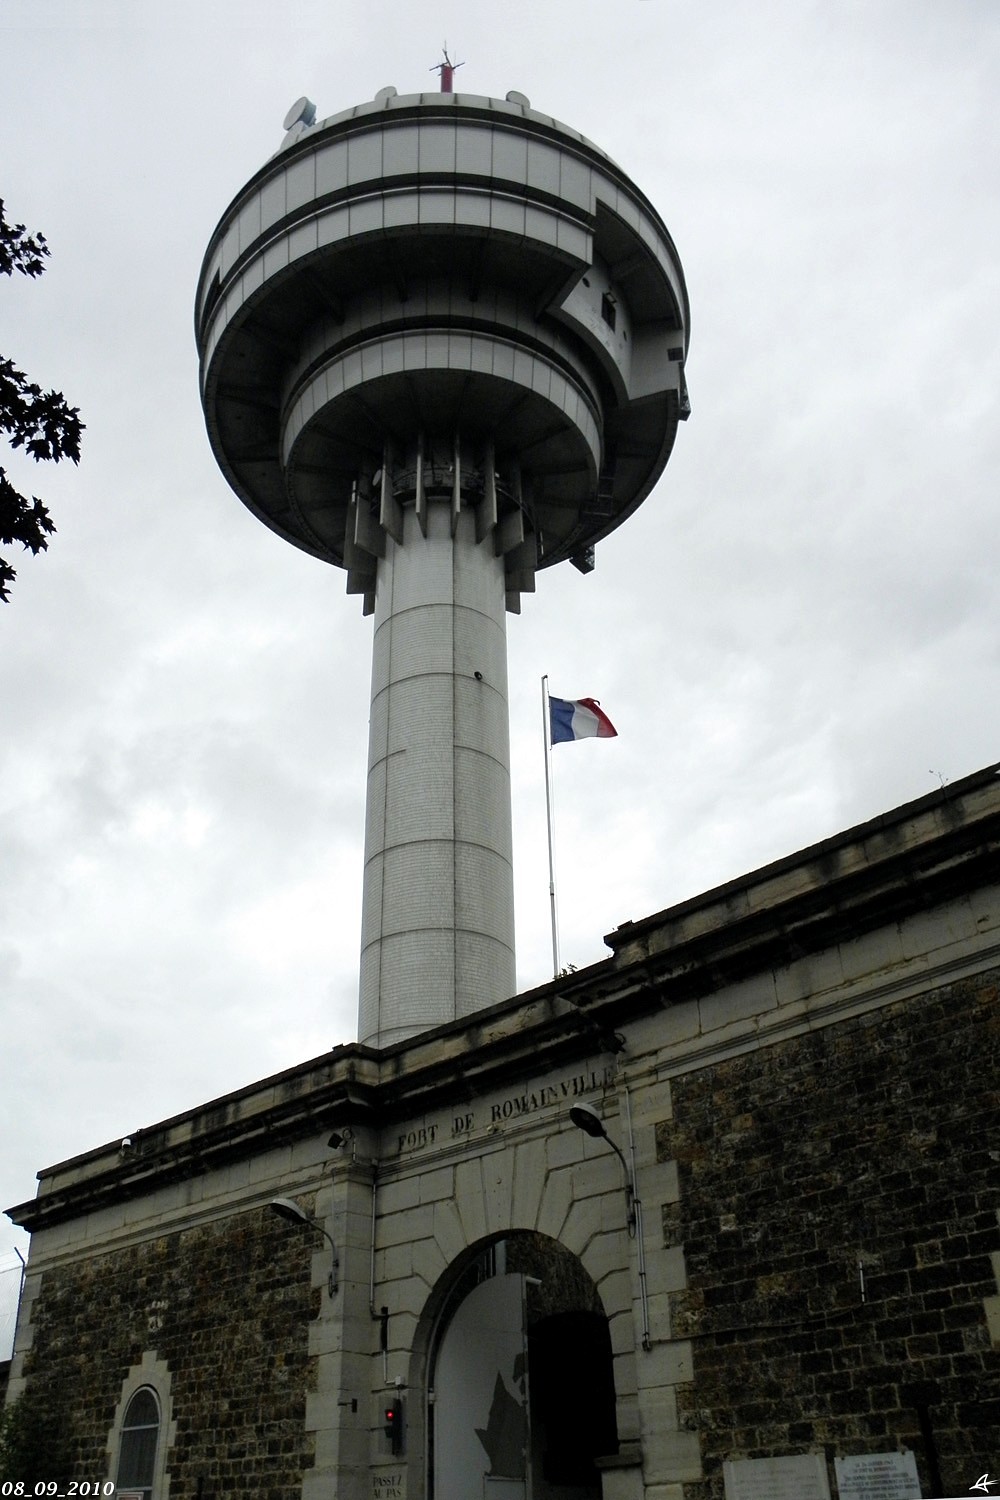 Ле-Лила, Fort de Romainville